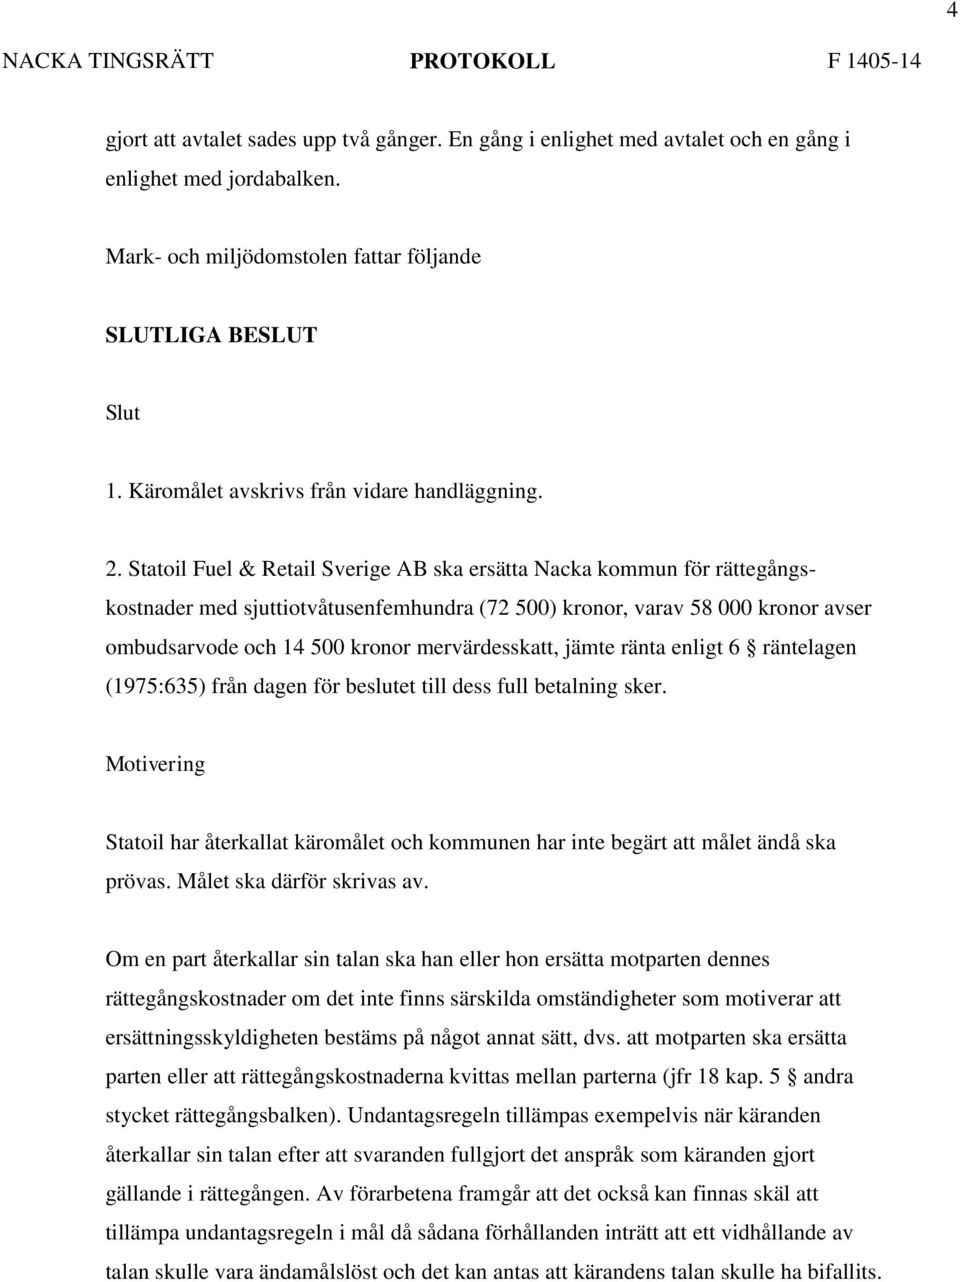 Statoil Fuel & Retail Sverige AB ska ersätta Nacka kommun för rättegångskostnader med sjuttiotvåtusenfemhundra (72 500) kronor, varav 58 000 kronor avser ombudsarvode och 14 500 kronor